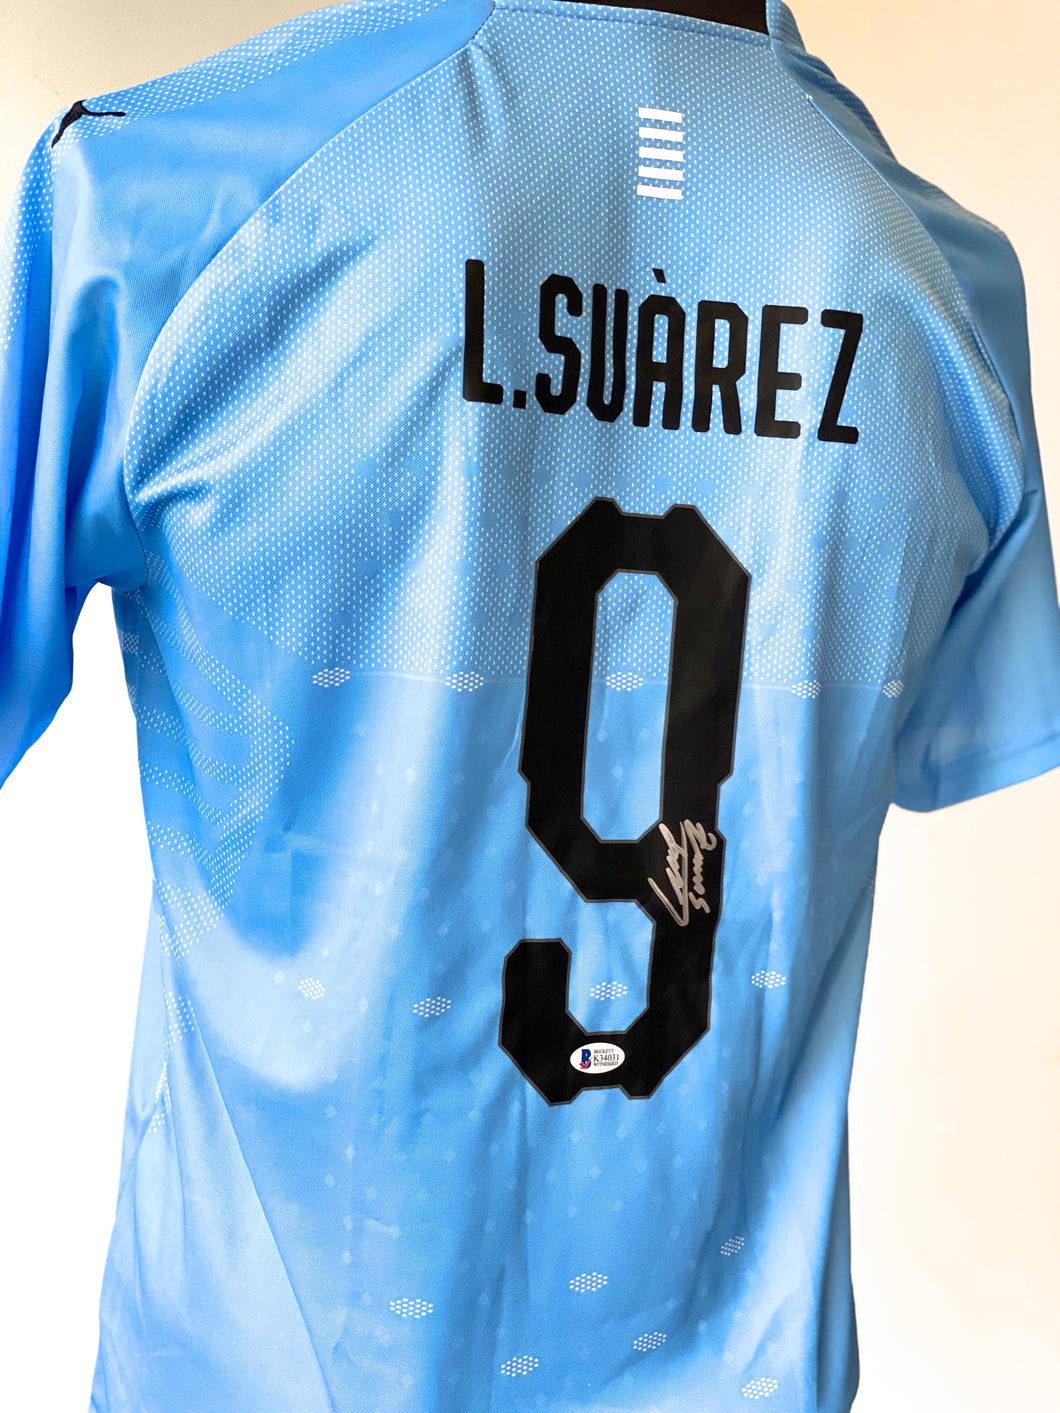 Jersey / Uruguay / Luis Suárez